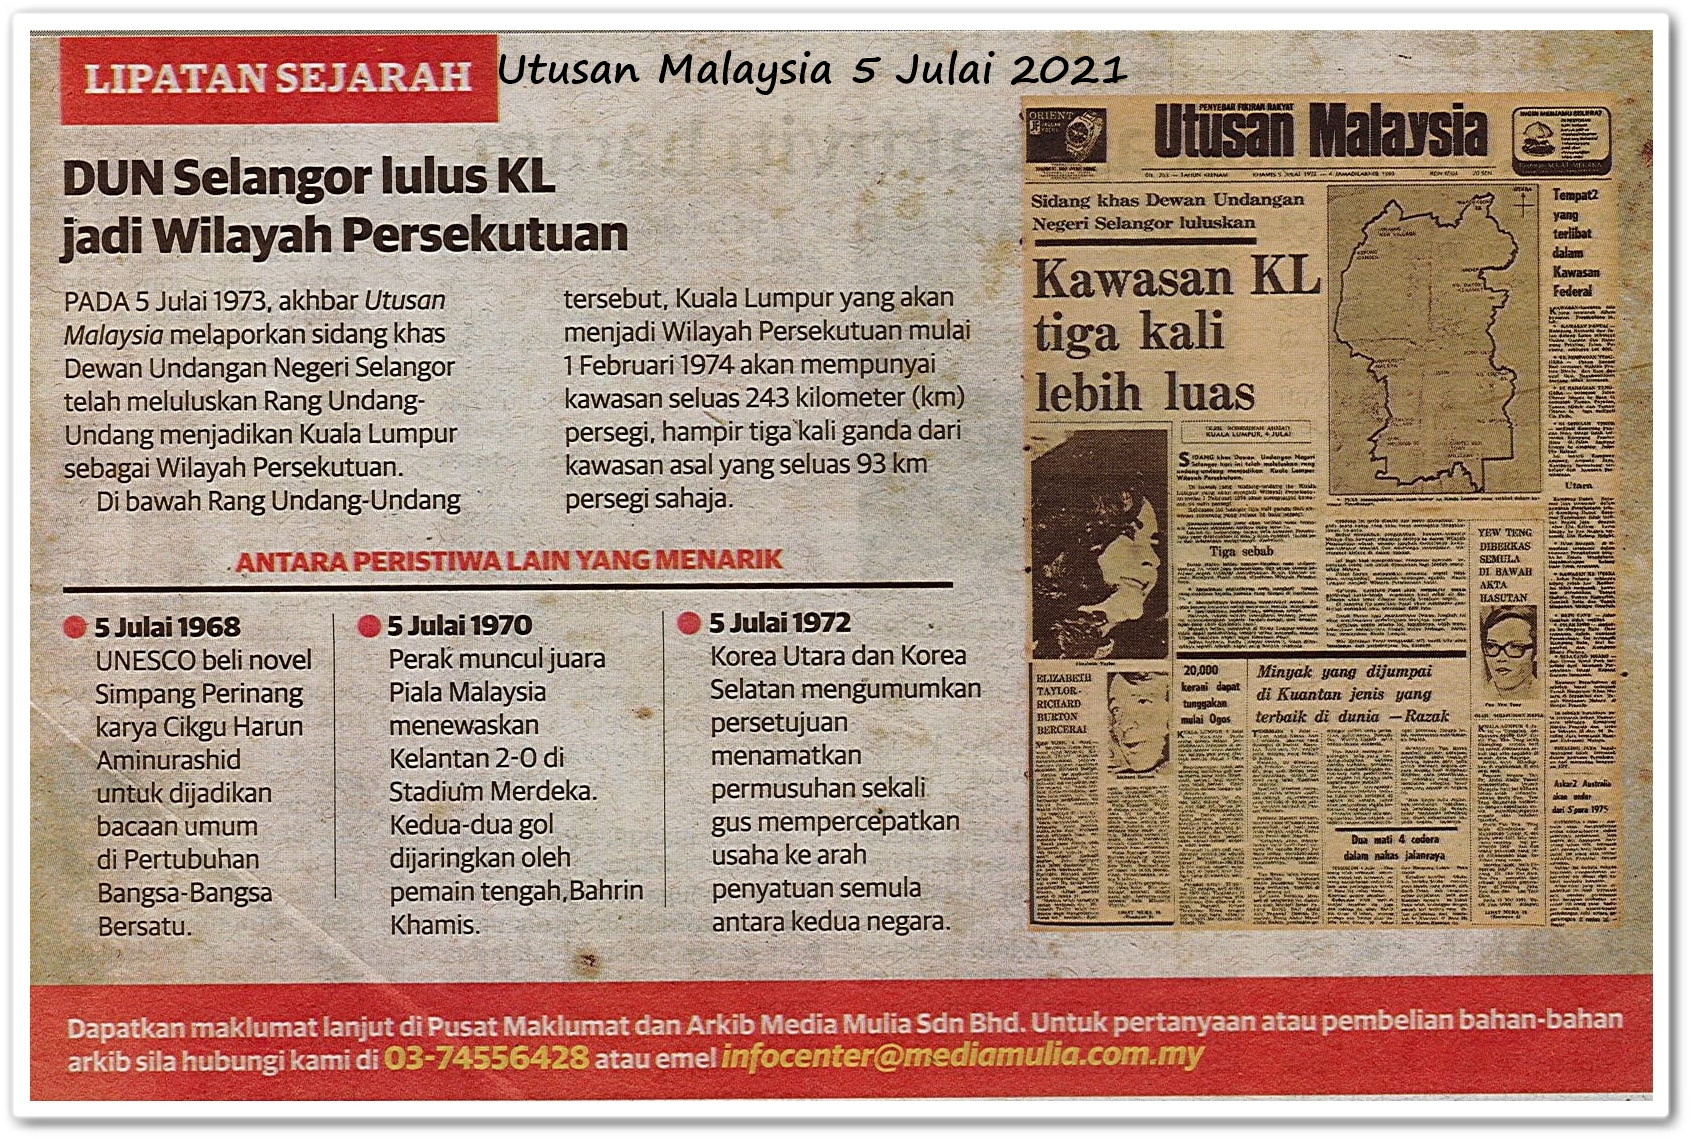 Lipatan sejarah 5 Julai - Keratan akhbar Utusan Malaysia 5 Julai 2021